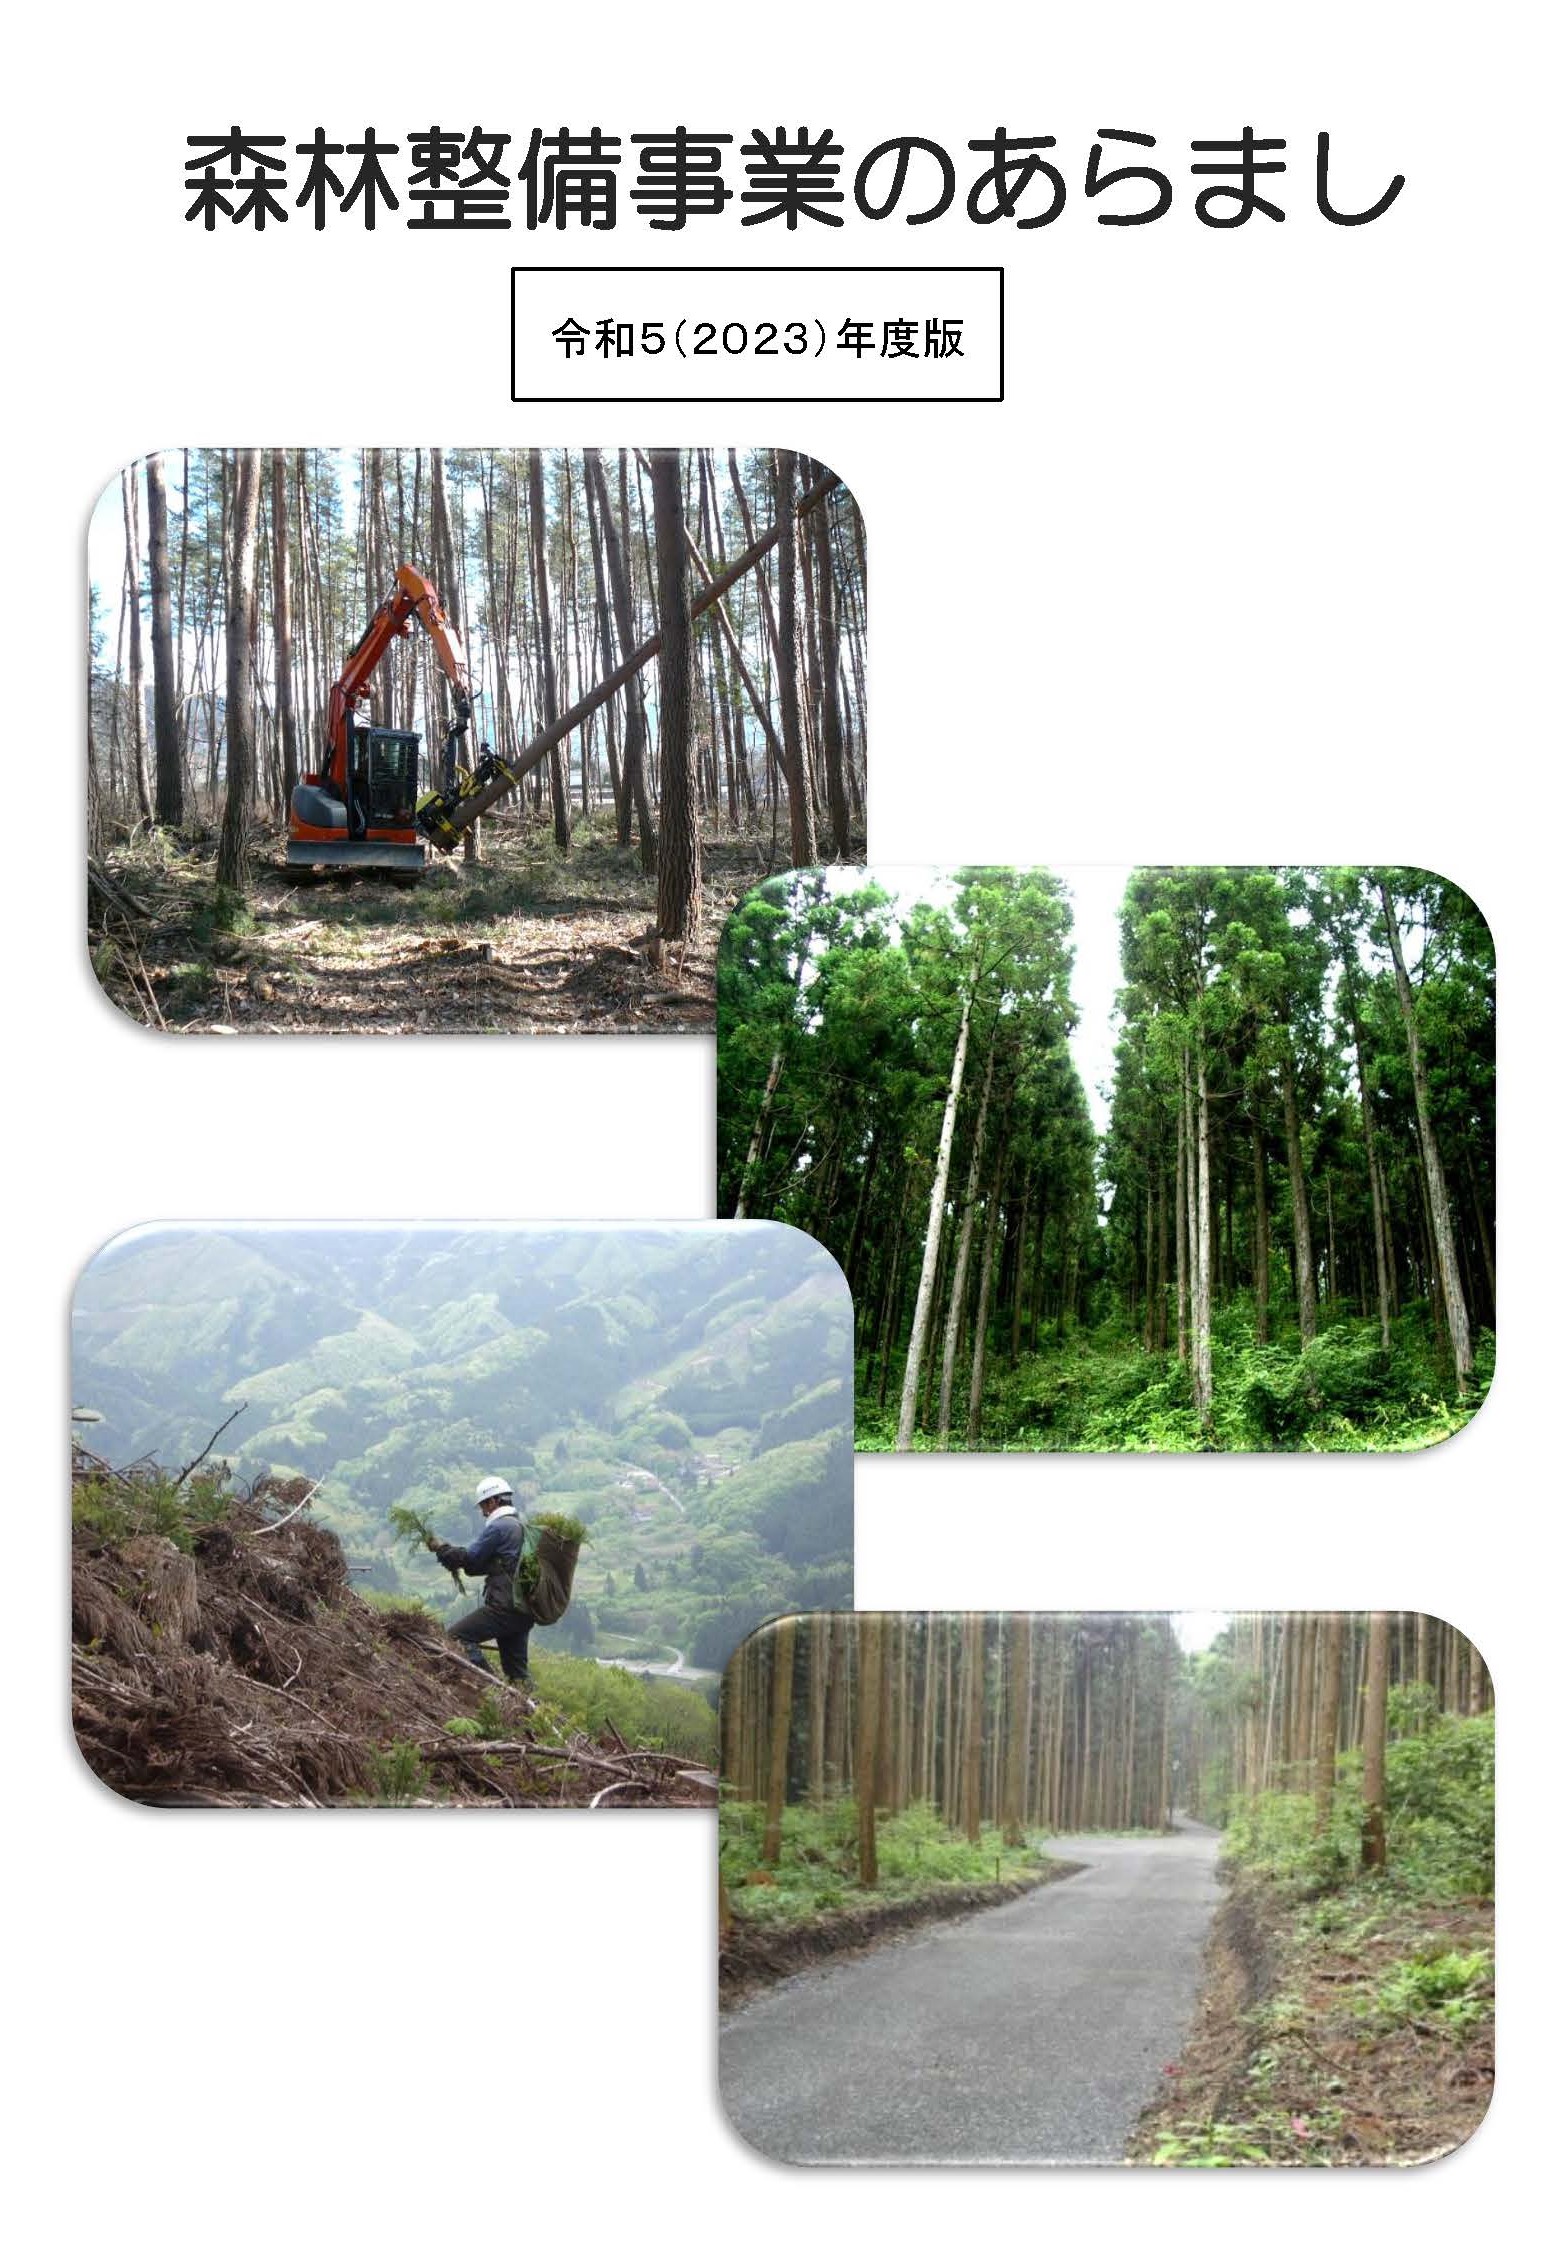 「森林整備事業のあらまし」を令和5年度版に更新しました